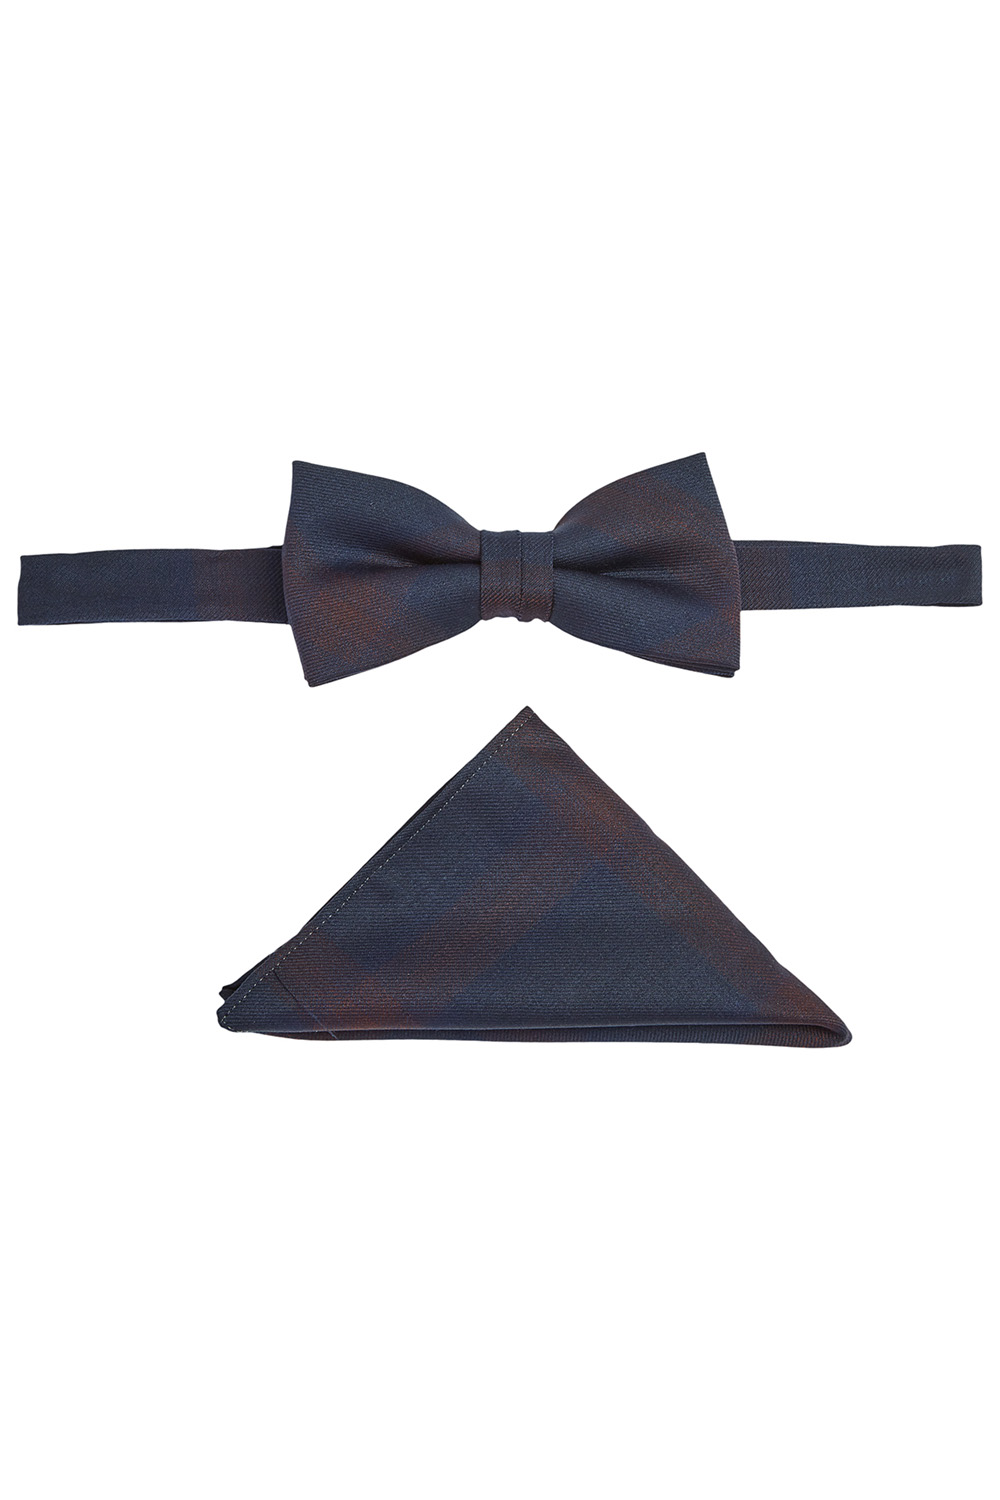 WILVORST kockás sötétkék csokornyakkendő díszzsebkendővel 404106-50 Modell 0424